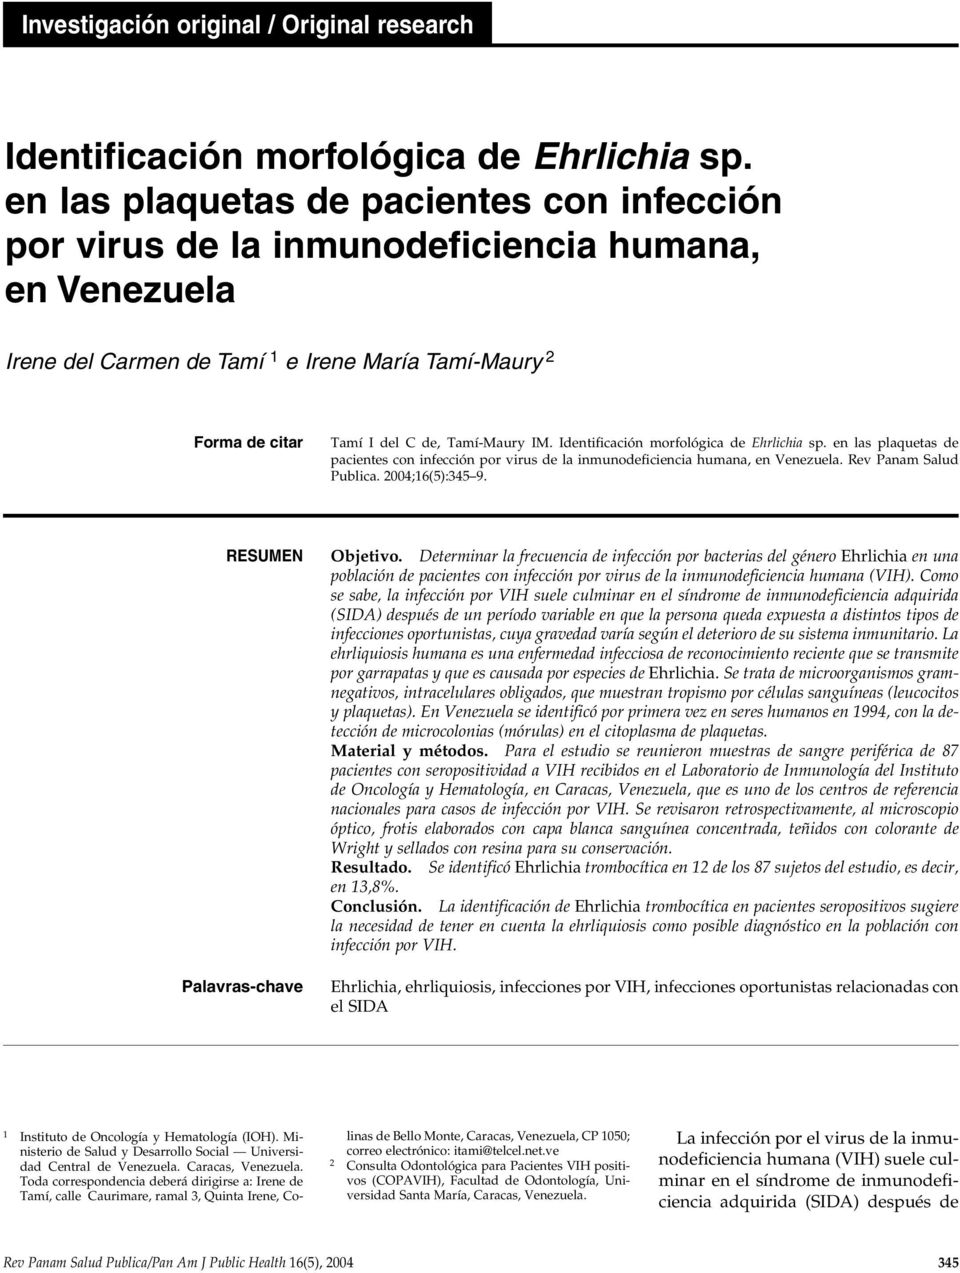 Identificación morfológica de Ehrlichia sp. en las plaquetas de pacientes con infección por virus de la inmunodeficiencia humana, en Venezuela. Rev Panam Salud Publica. 2004;16(5):345 9.